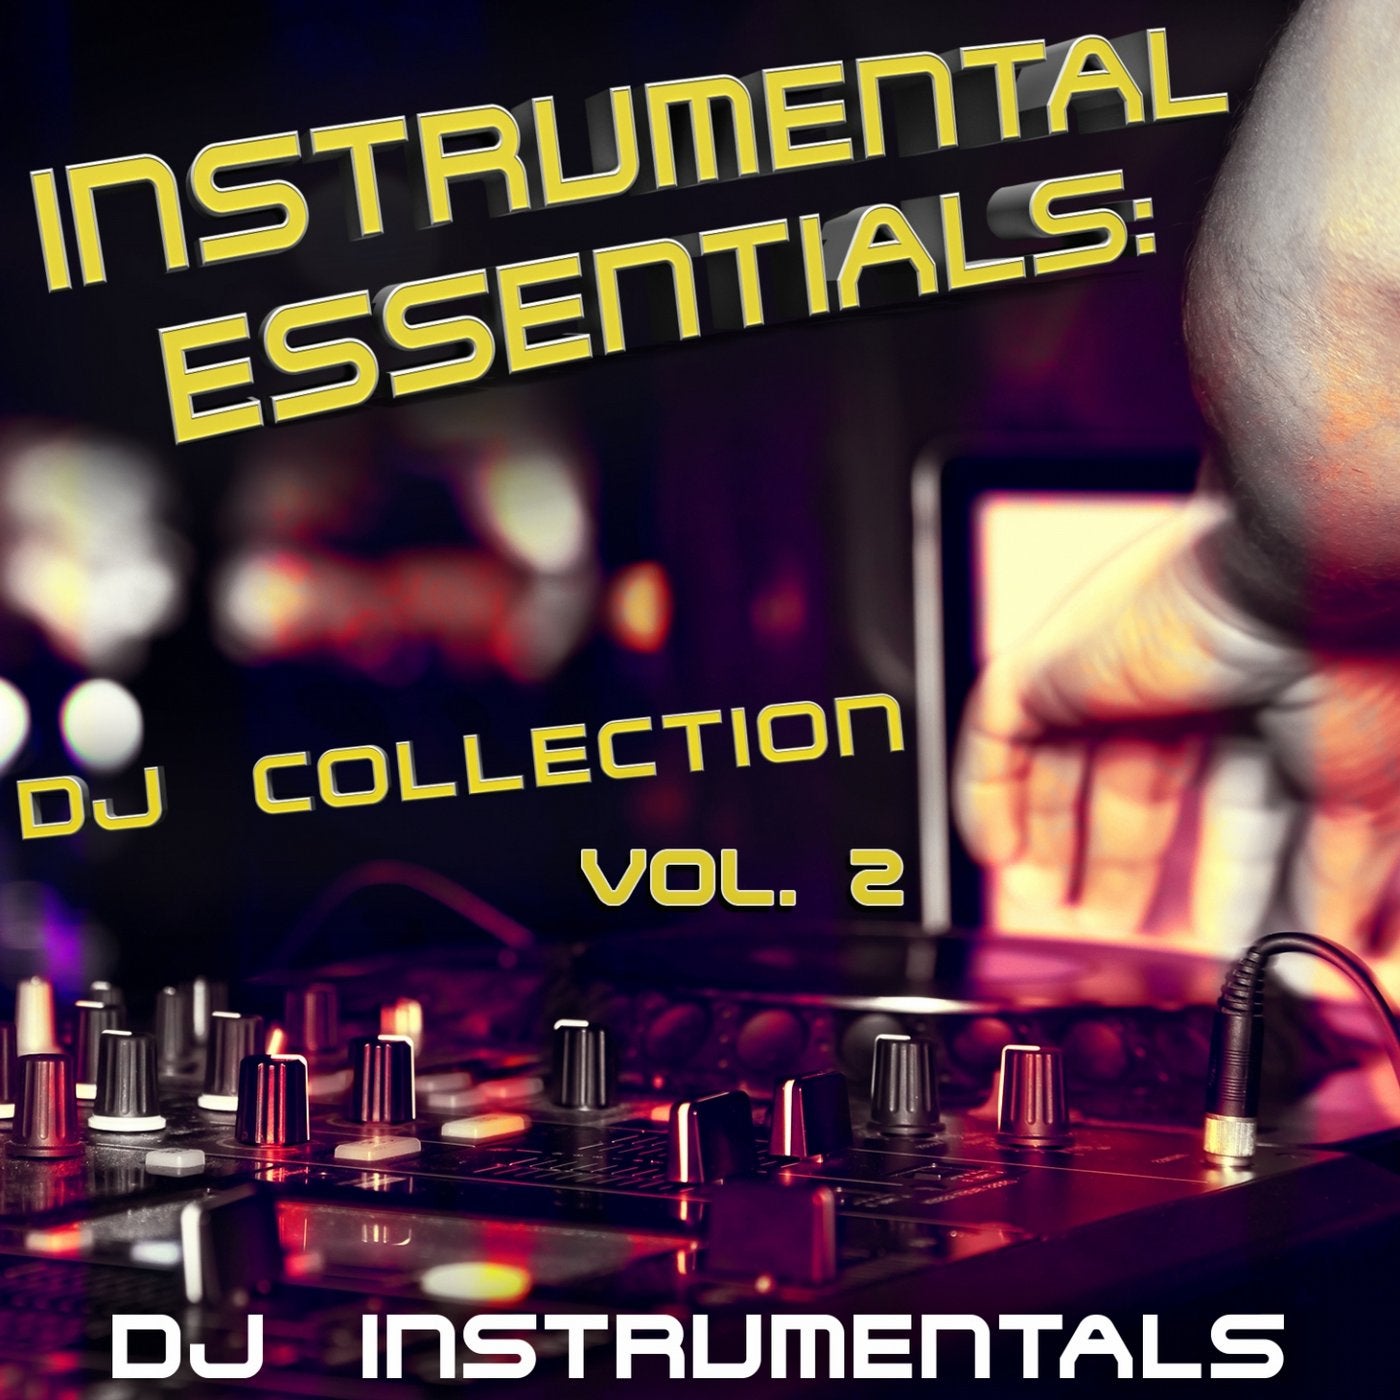 Инструментальная версия песни. Инструментал. Instrumental collection Vol. DJ Instrumental. Обувь диджей коллекцион.